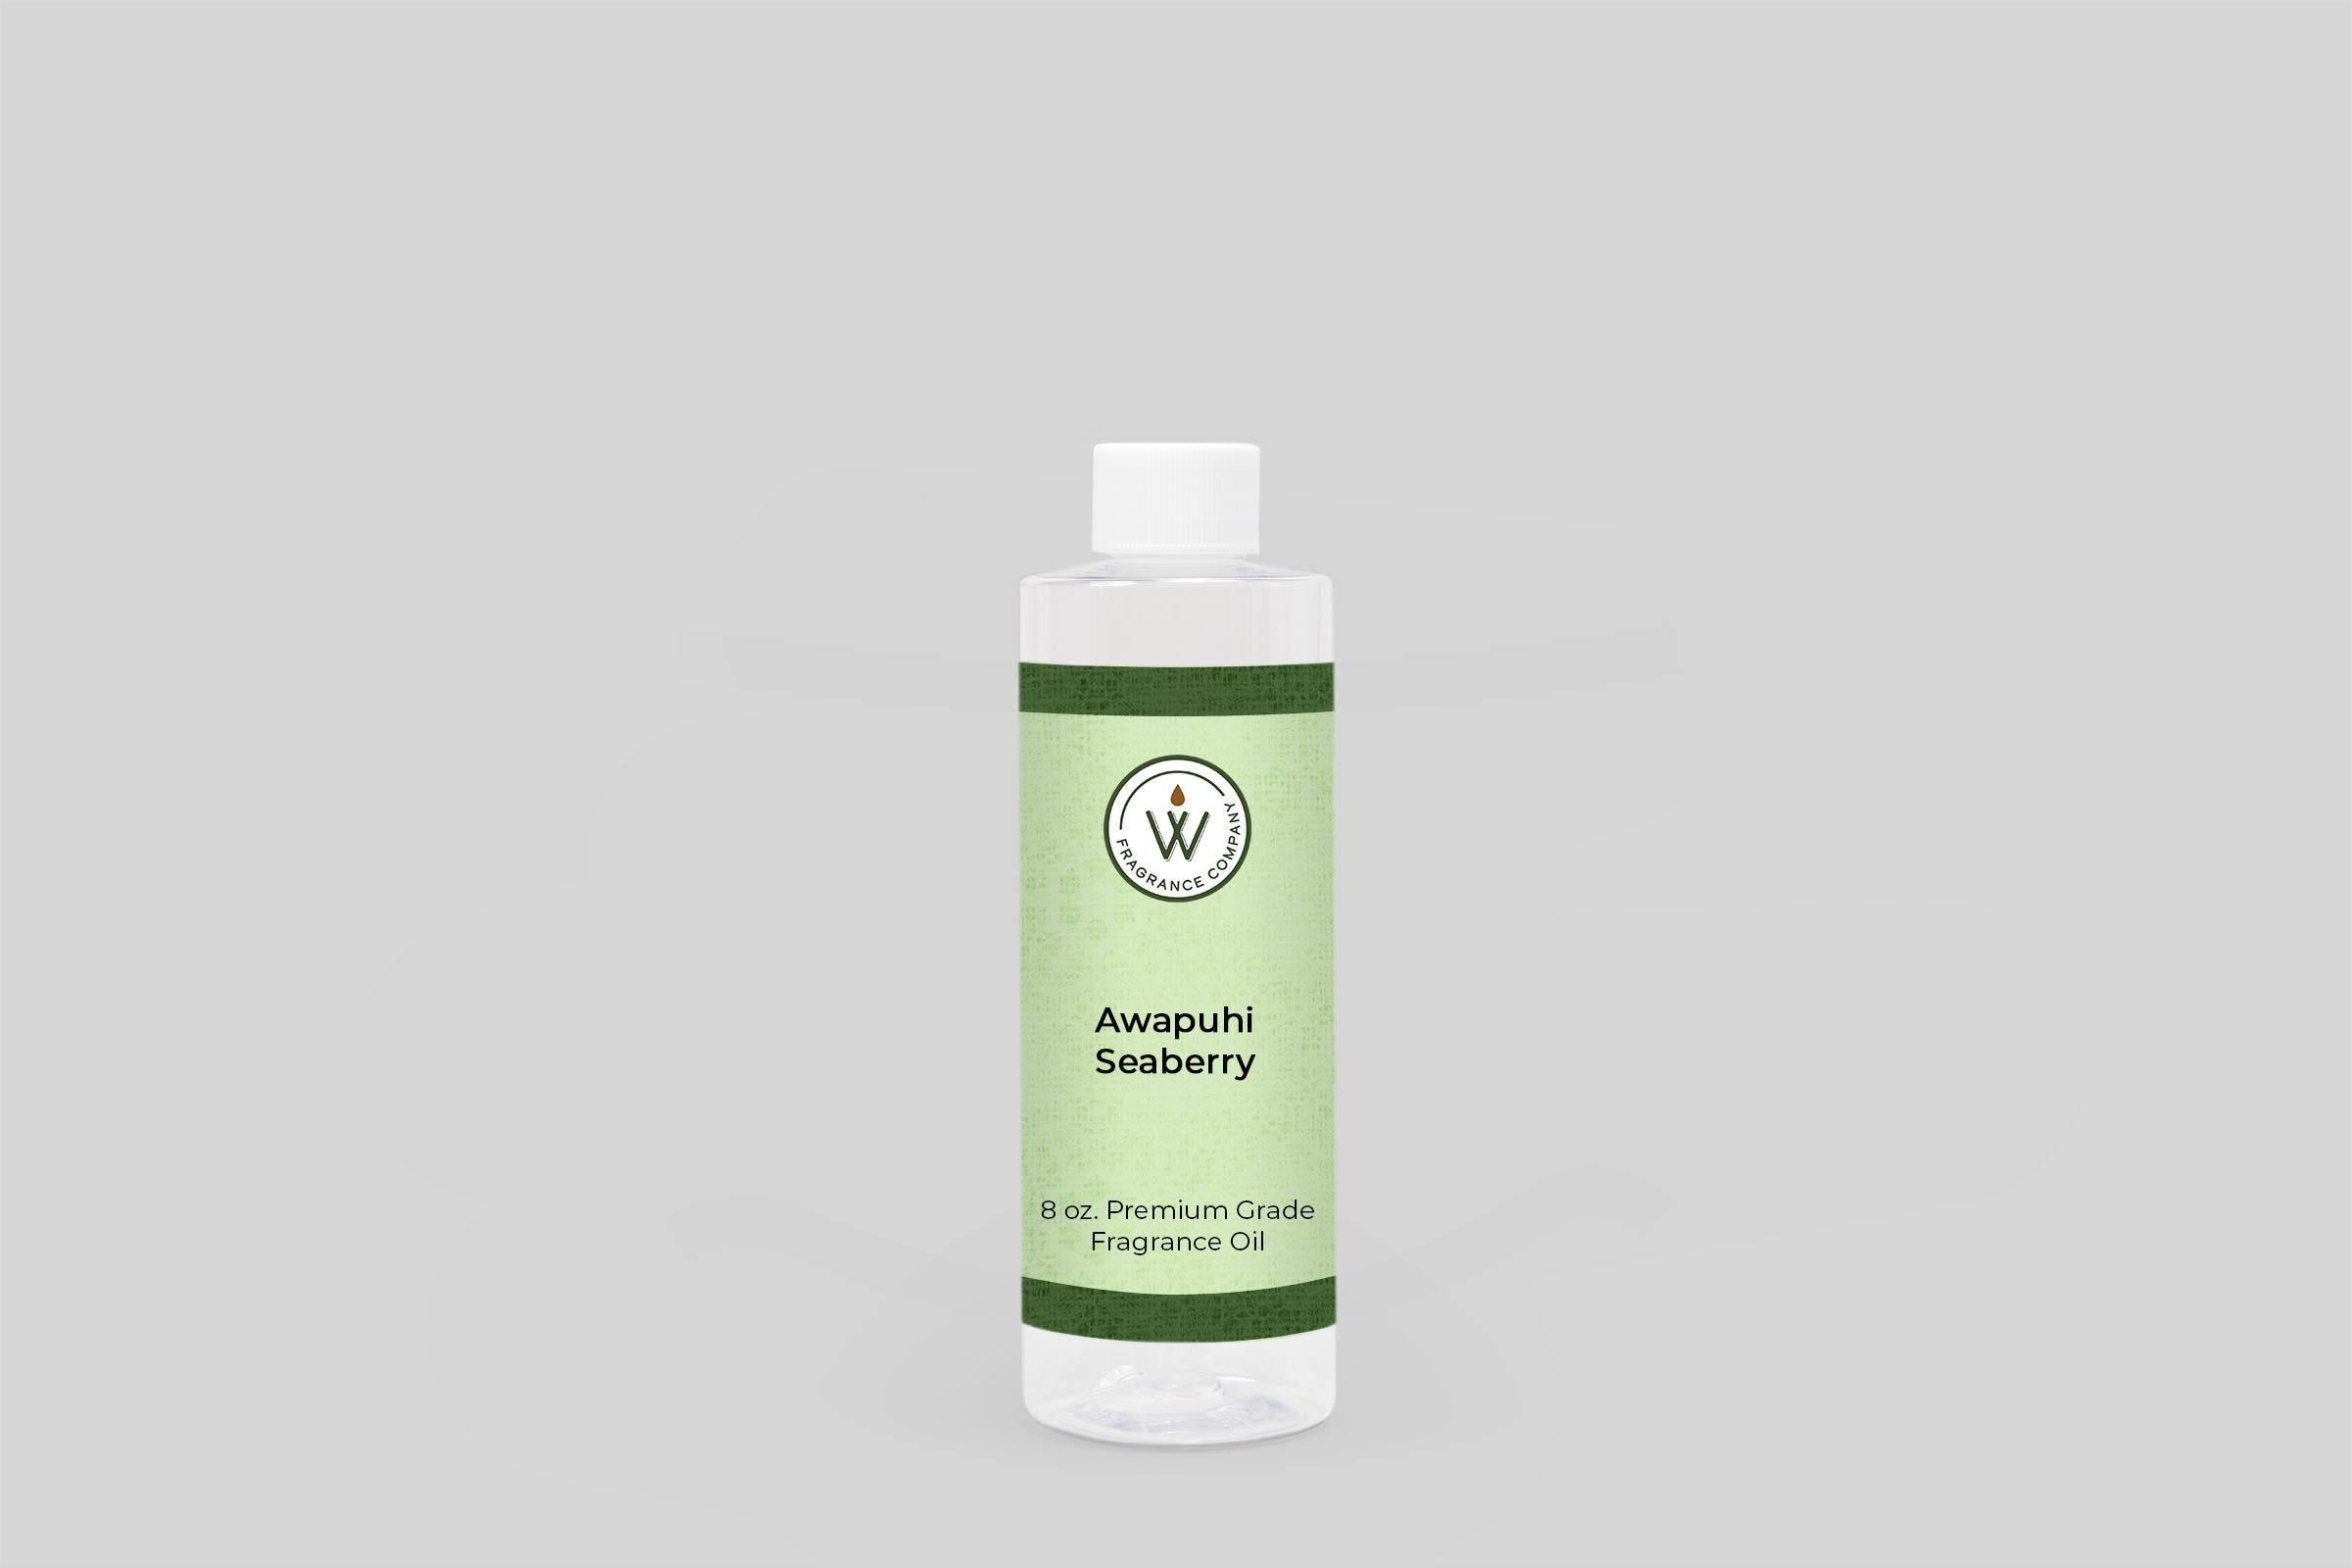 Awapuhi Seaberry Fragrance Oil